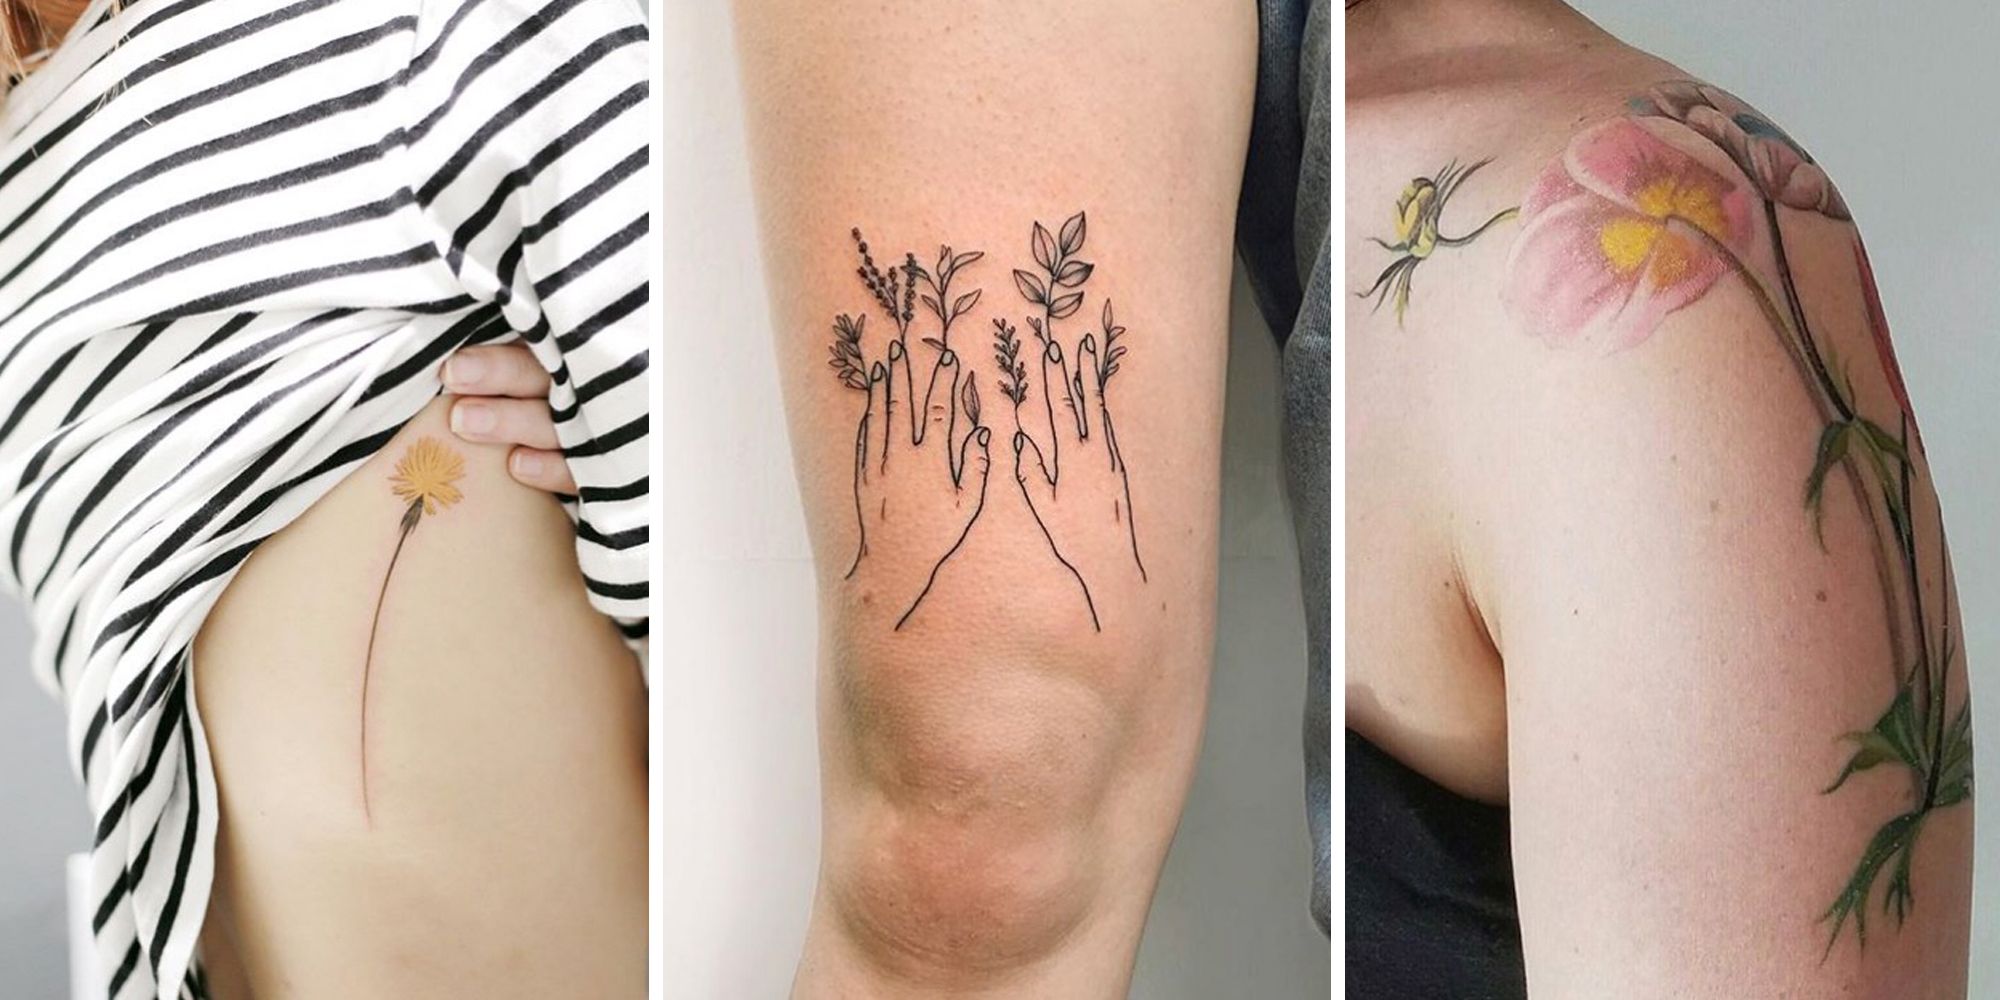 Minimalist Tattoo Ideas on Twitter Minimalism flower  shouldertattoo tattooforwoman tattooideas httpstco1JBmgDMuxx  httpstcoeQUm7lg5jG  Twitter